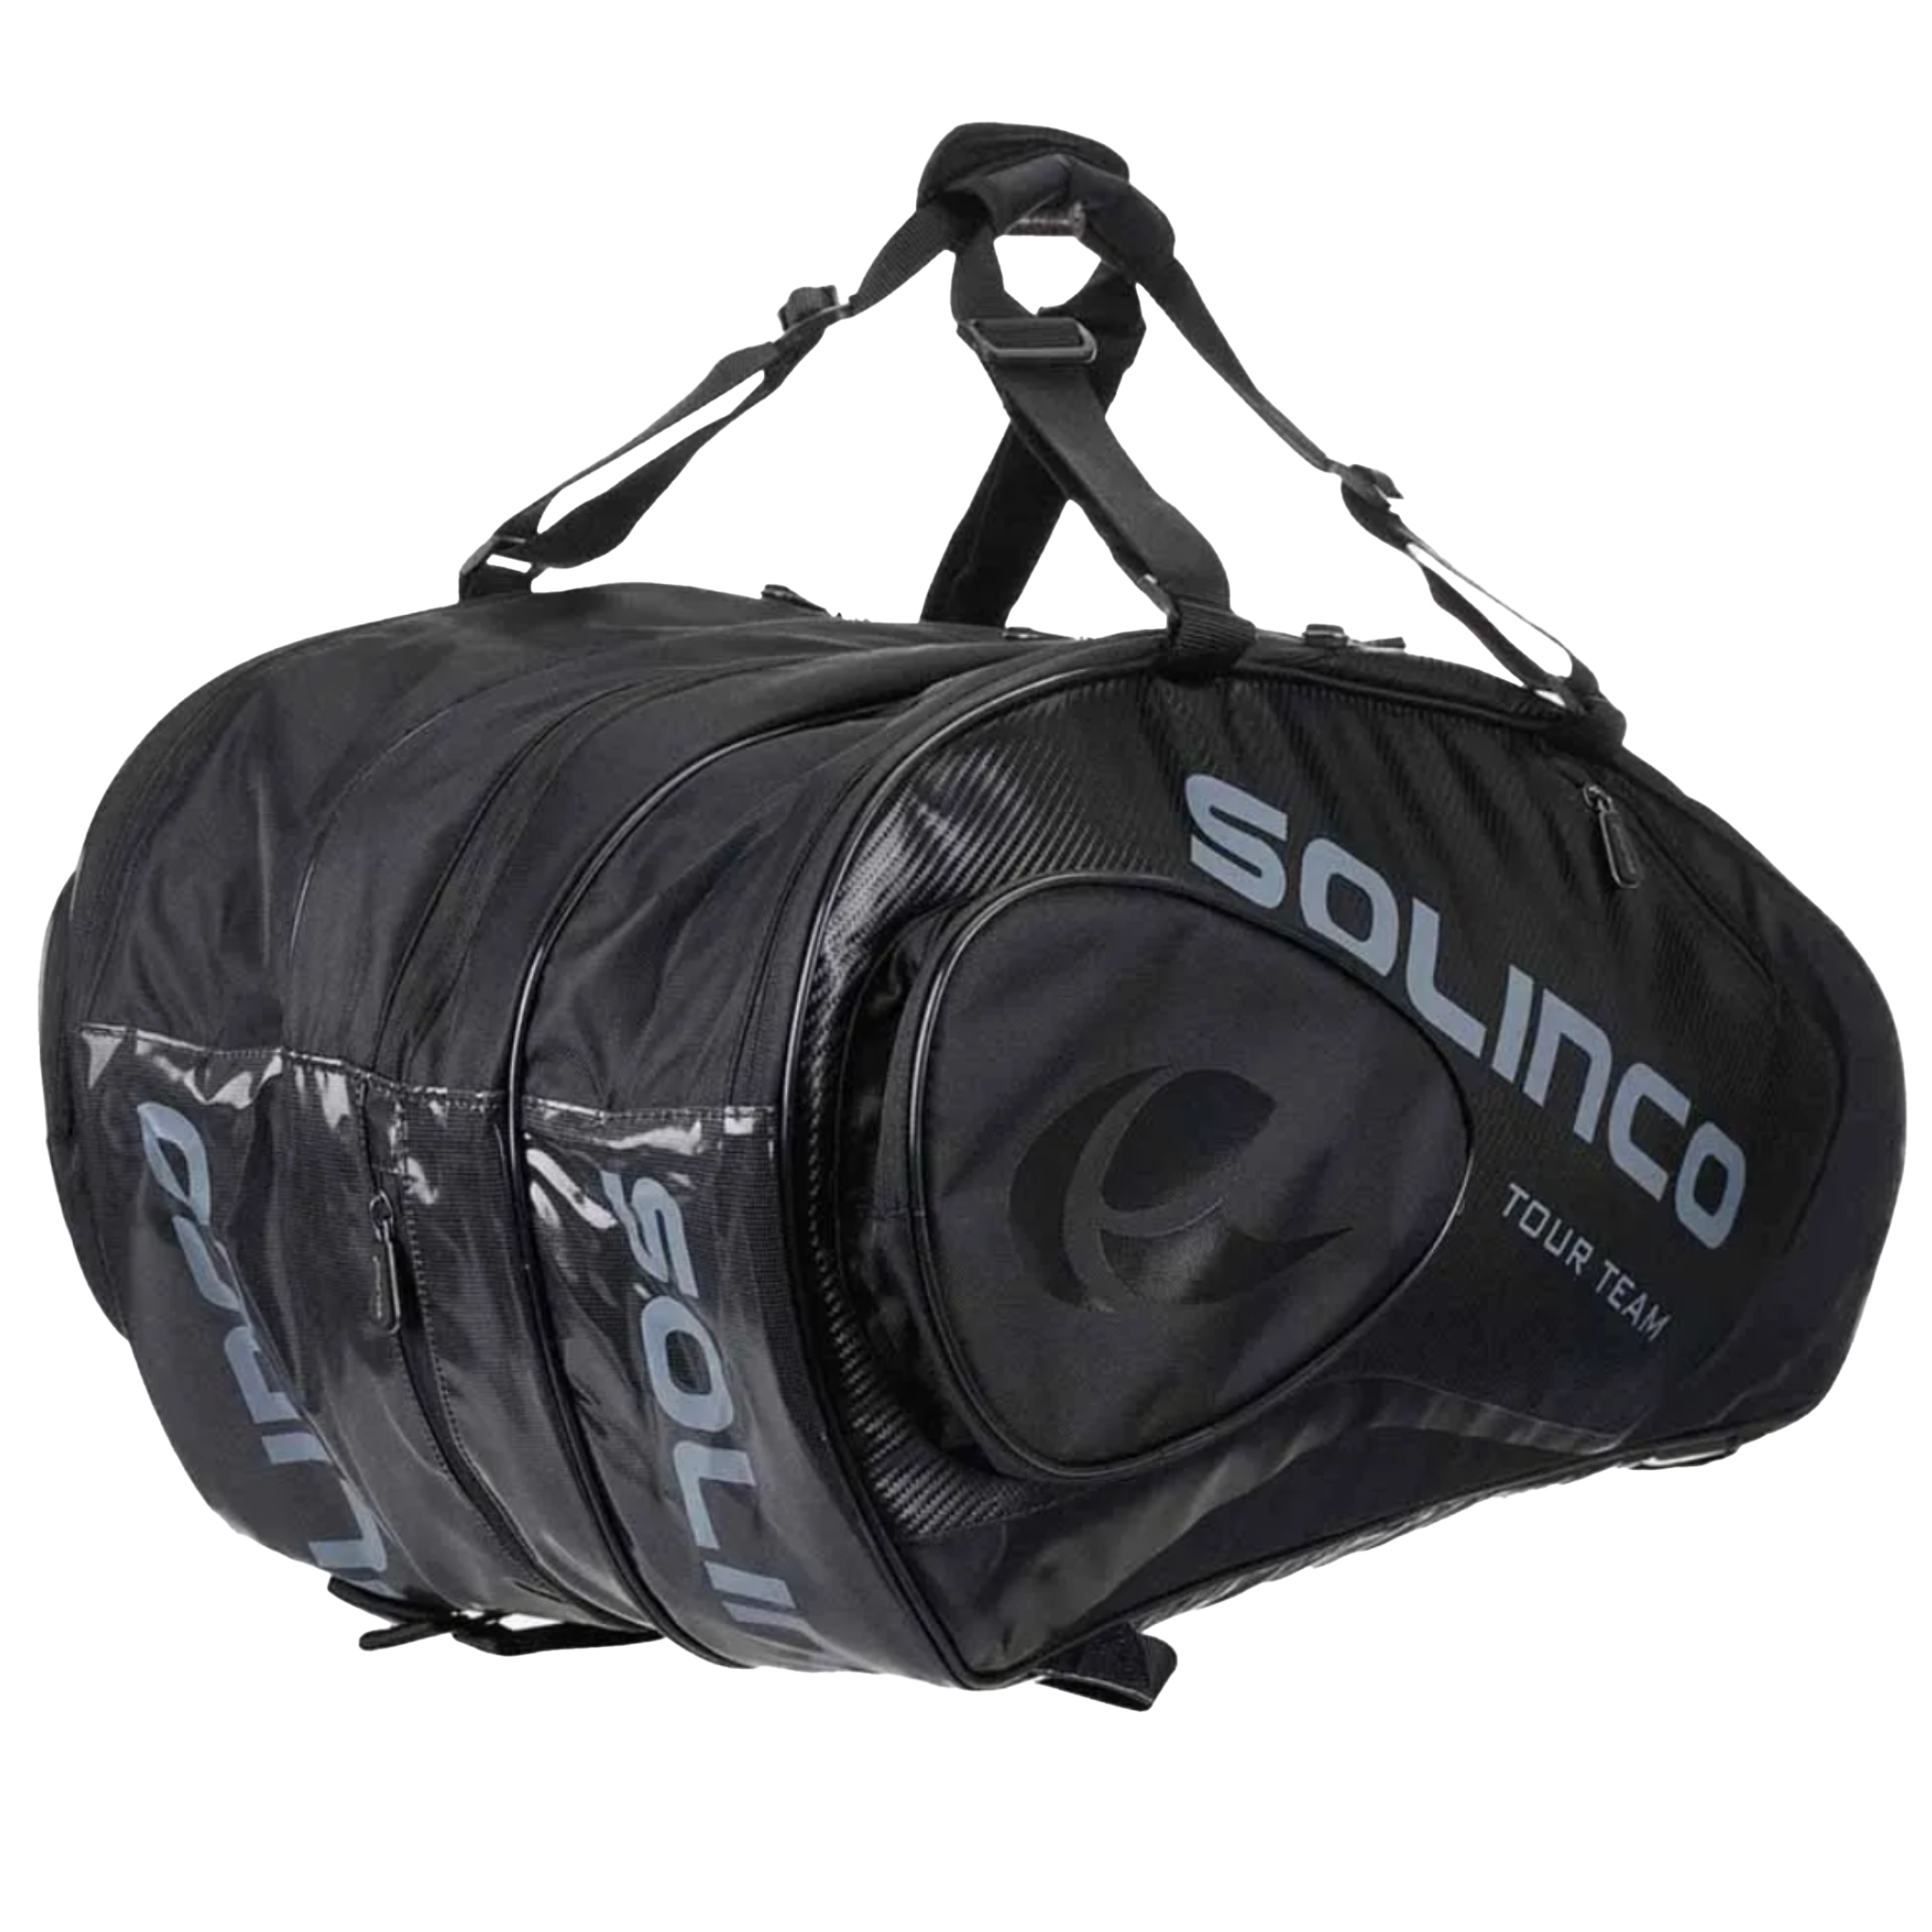 Solinco 15-Pack Tour Bag - Blackout